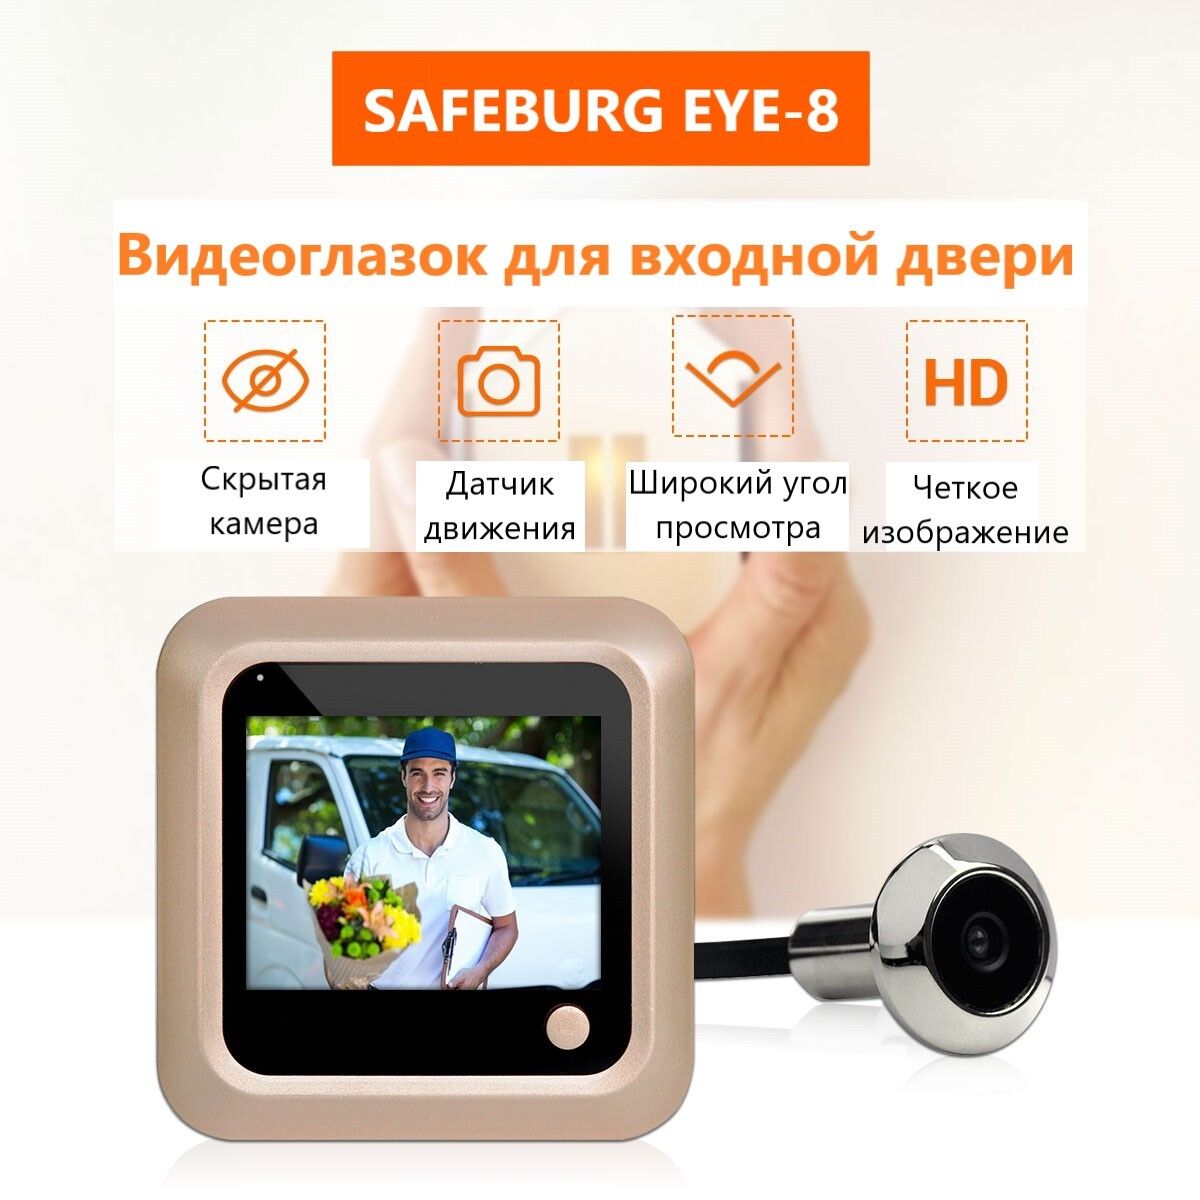 Видеоглазок SAFEBURG EYE-8 для входной двери с возможностью делать фото снимки